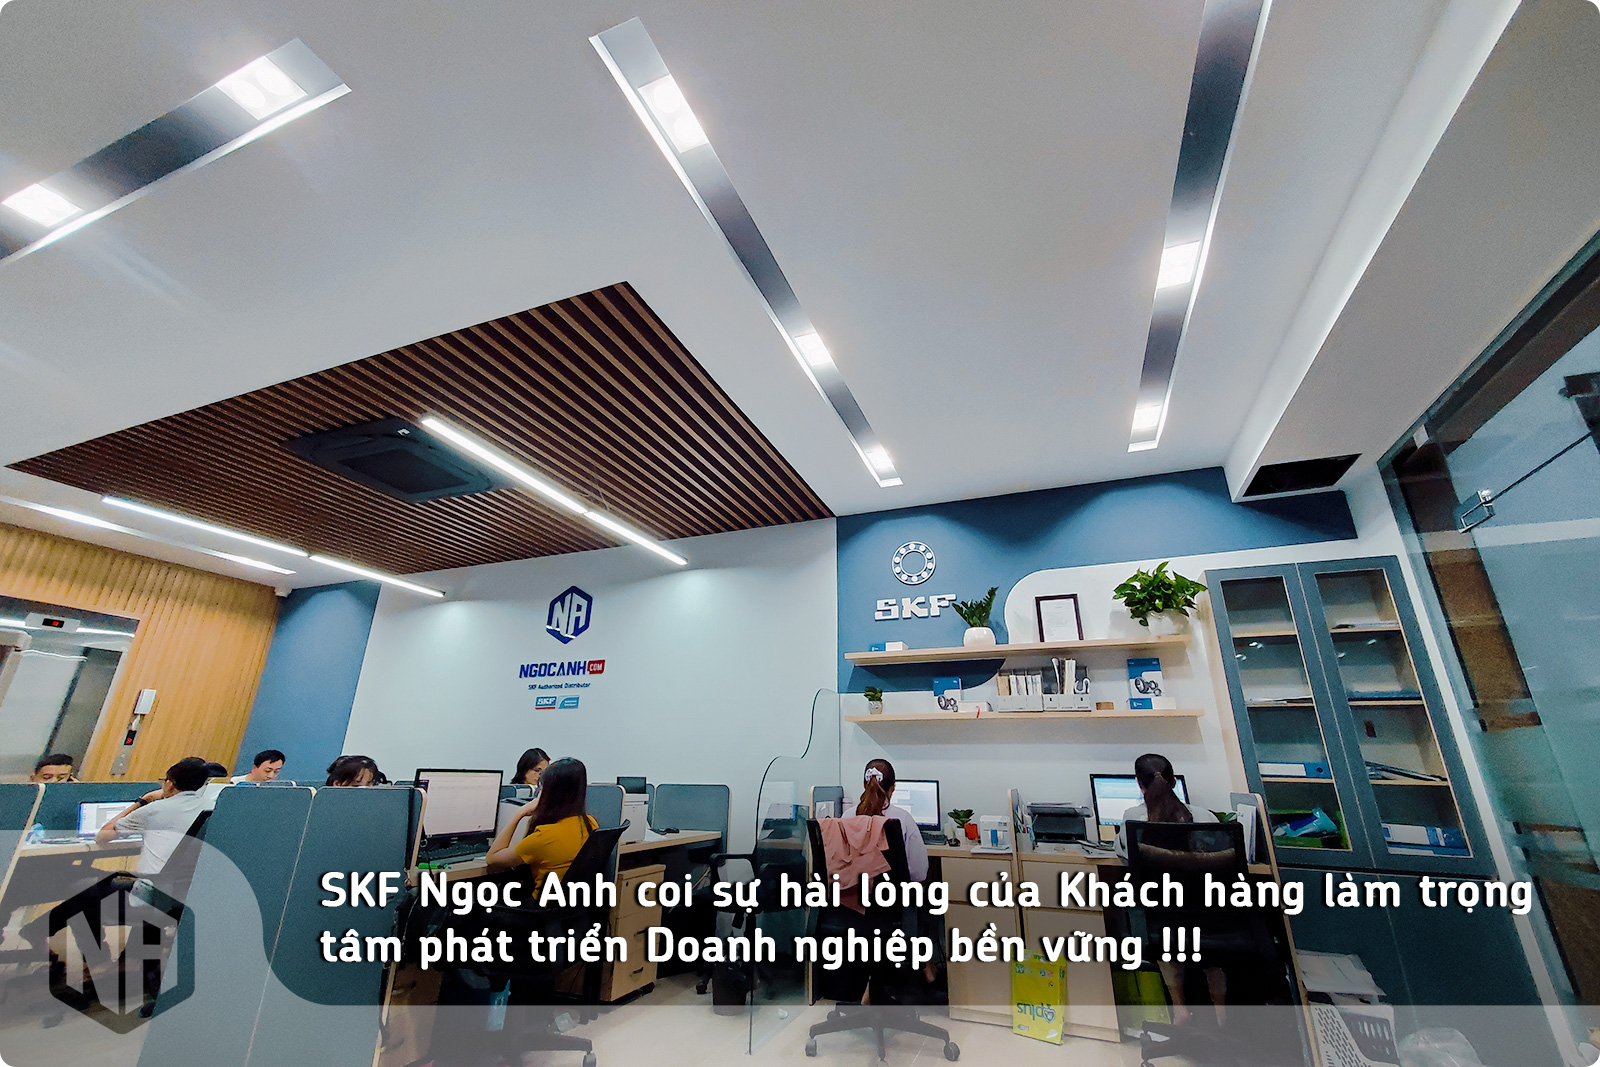 NGOCANH.COM - Đại lý uỷ quyền SKF chính hãng tại Việt Nam